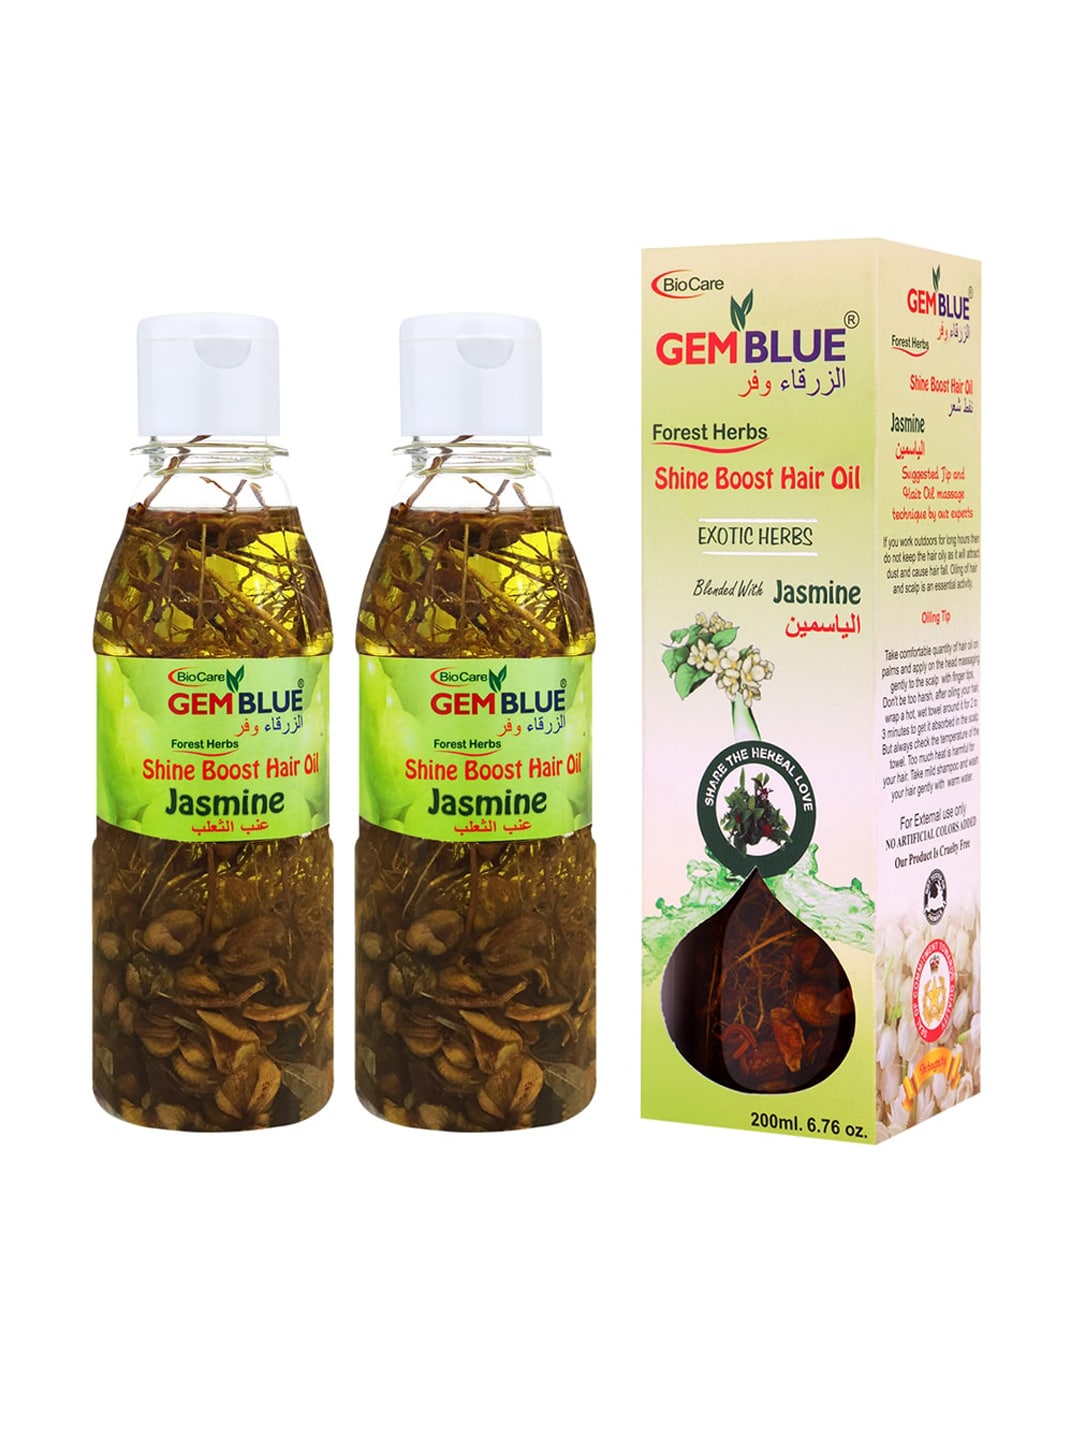 GEMBLUE BioCare Unisex Set of 2 Jasmine Hair Oils Price in India